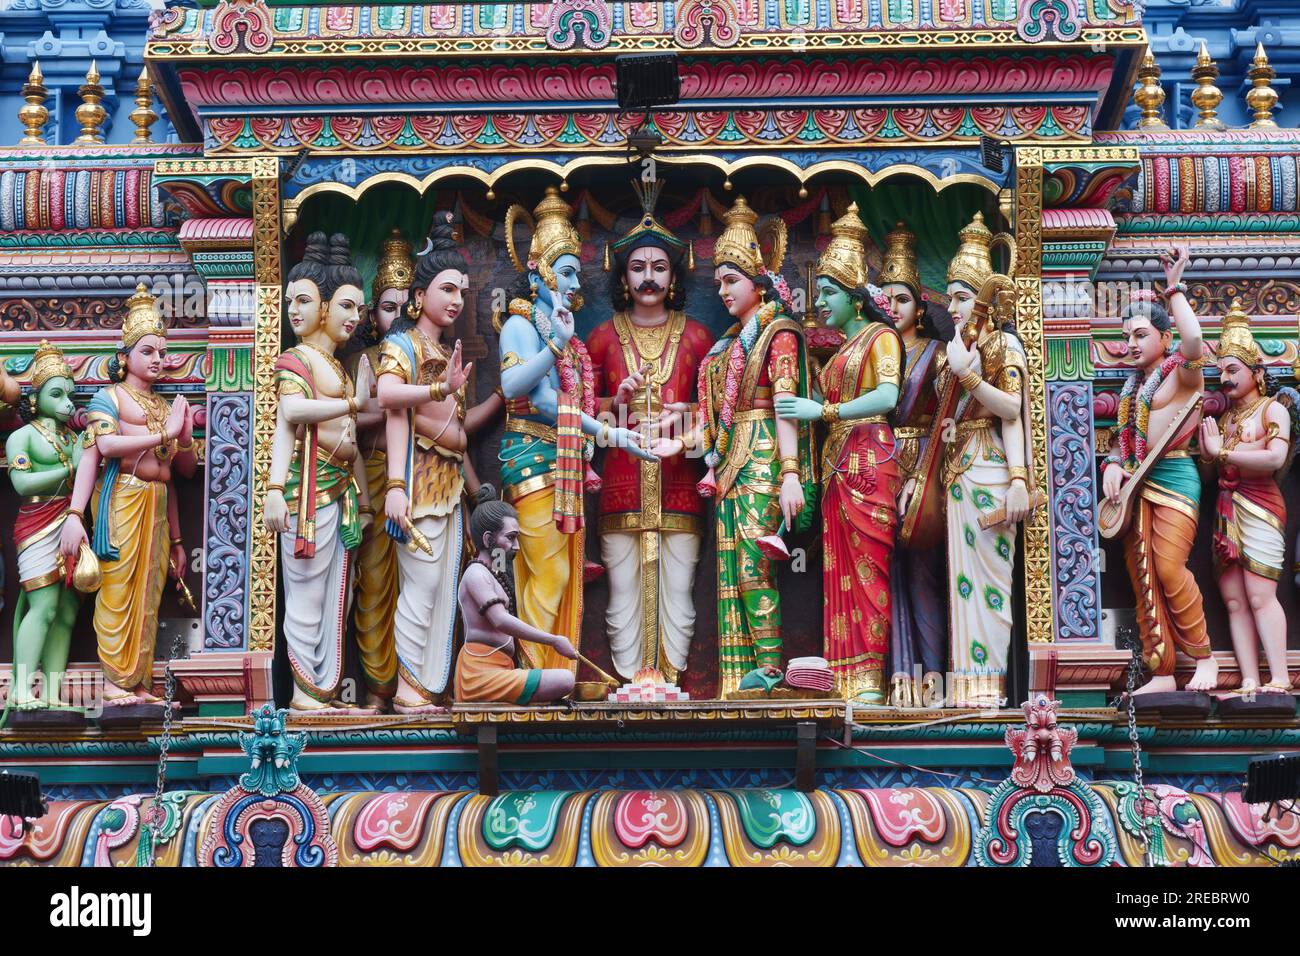 Une multitude de figures pieuses et mythiques décorant l'entrée du temple Sri Krishnan à Waterloo St., Bugis, Singapour Banque D'Images